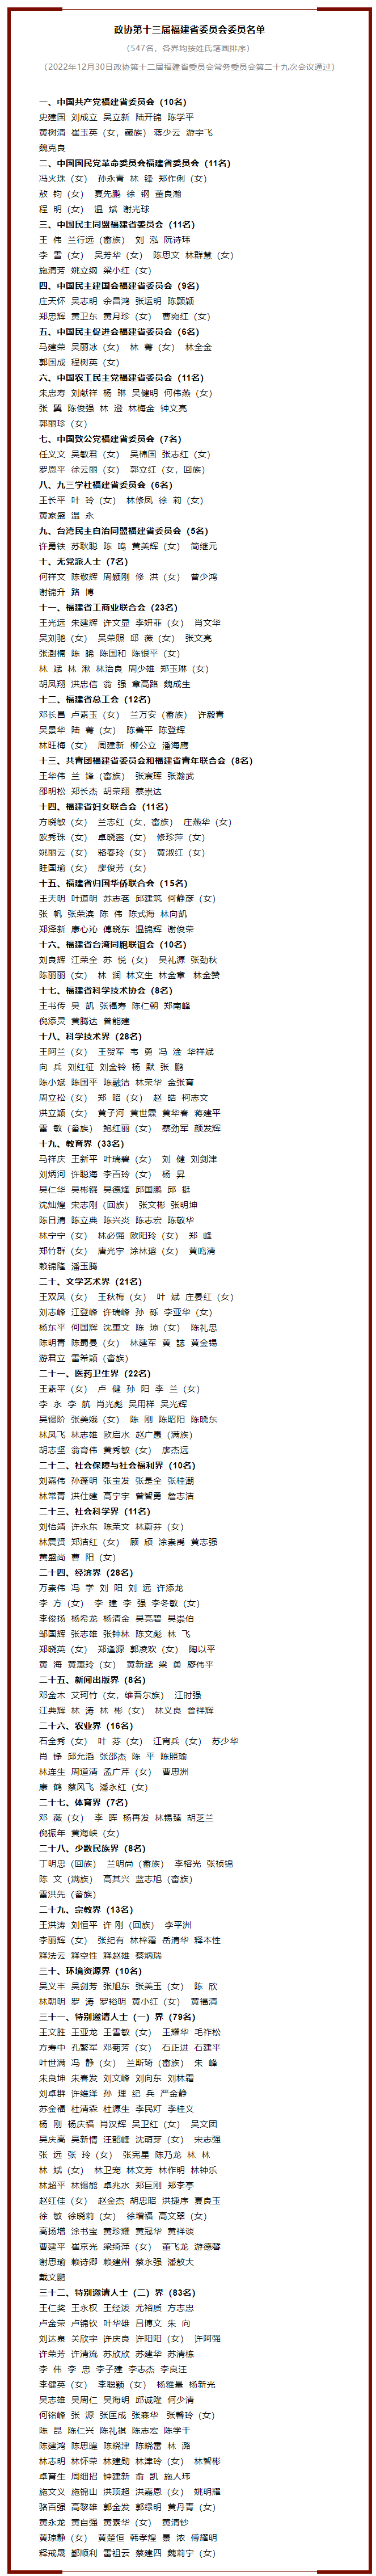 福建省政协十三届一次会议于明年1月中旬召开（附委员名单）.png